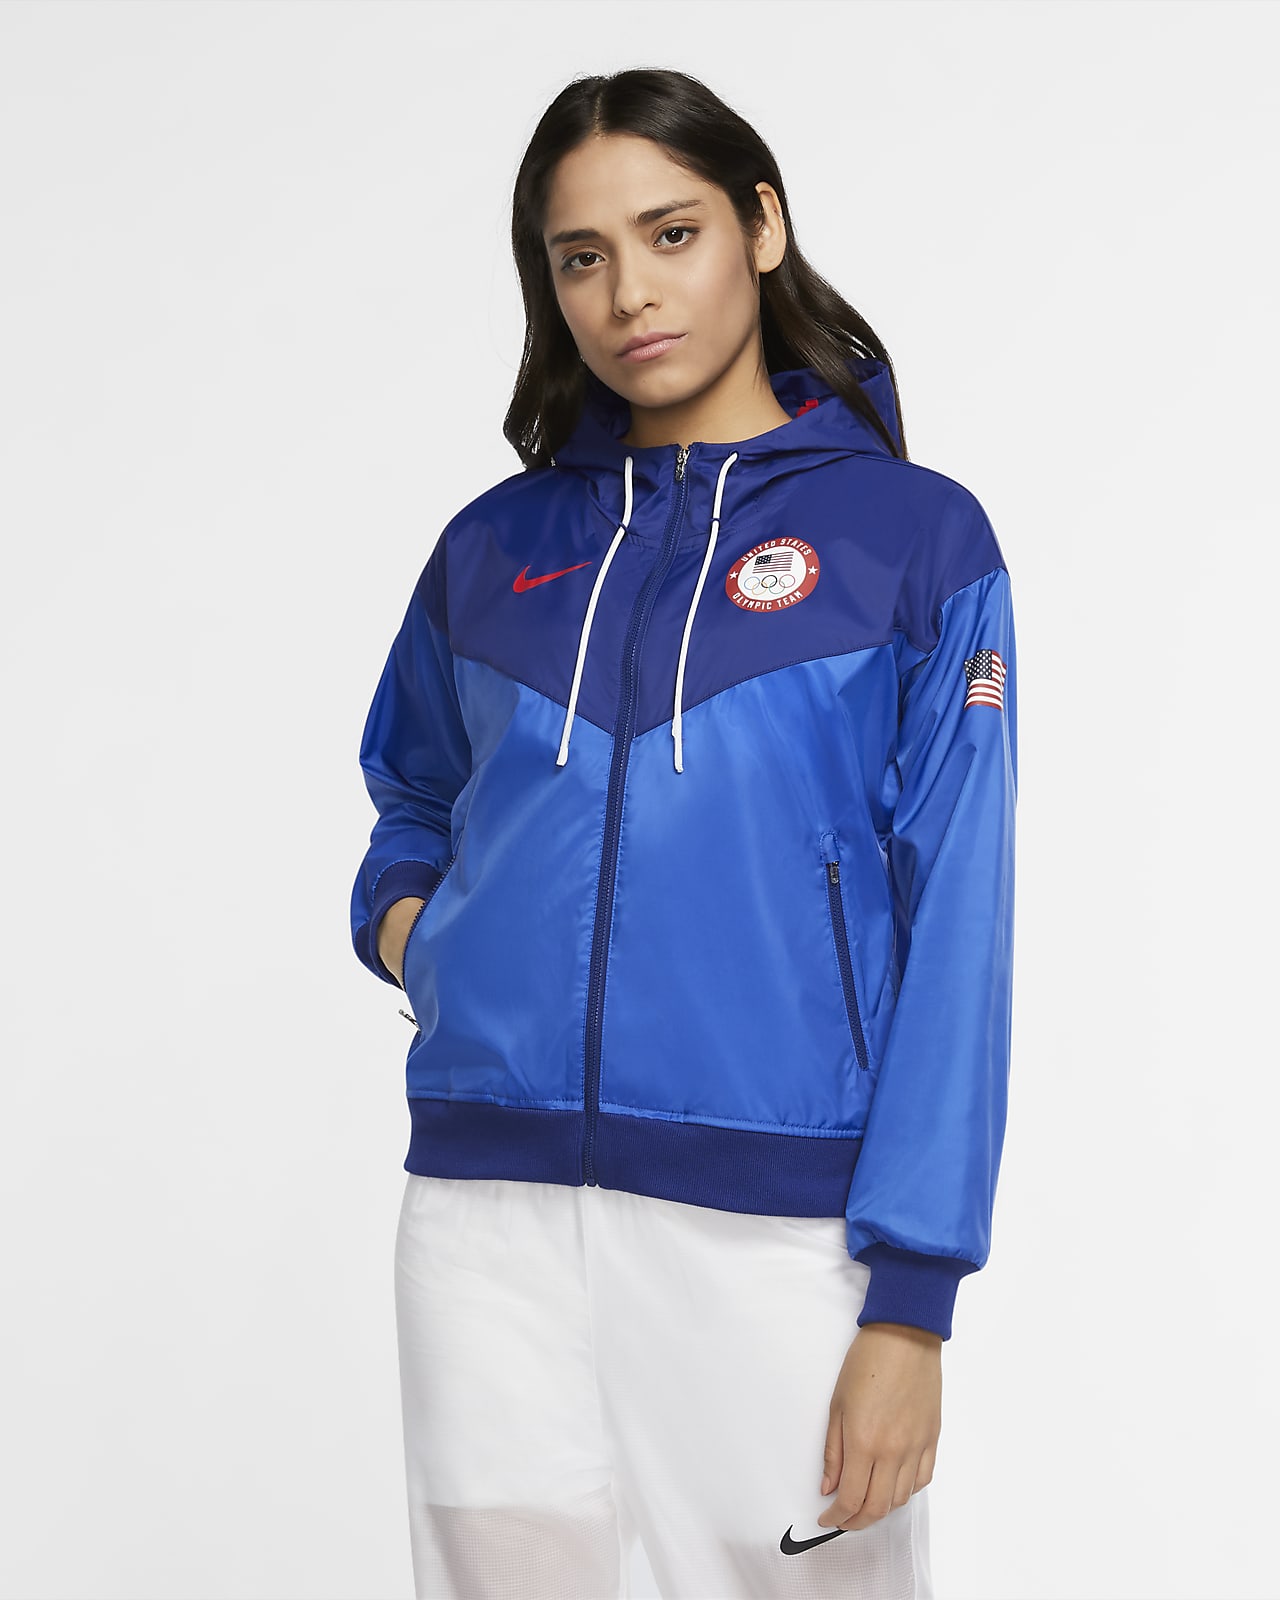 Nike Team USA Windrunner Women's Woven Jacket